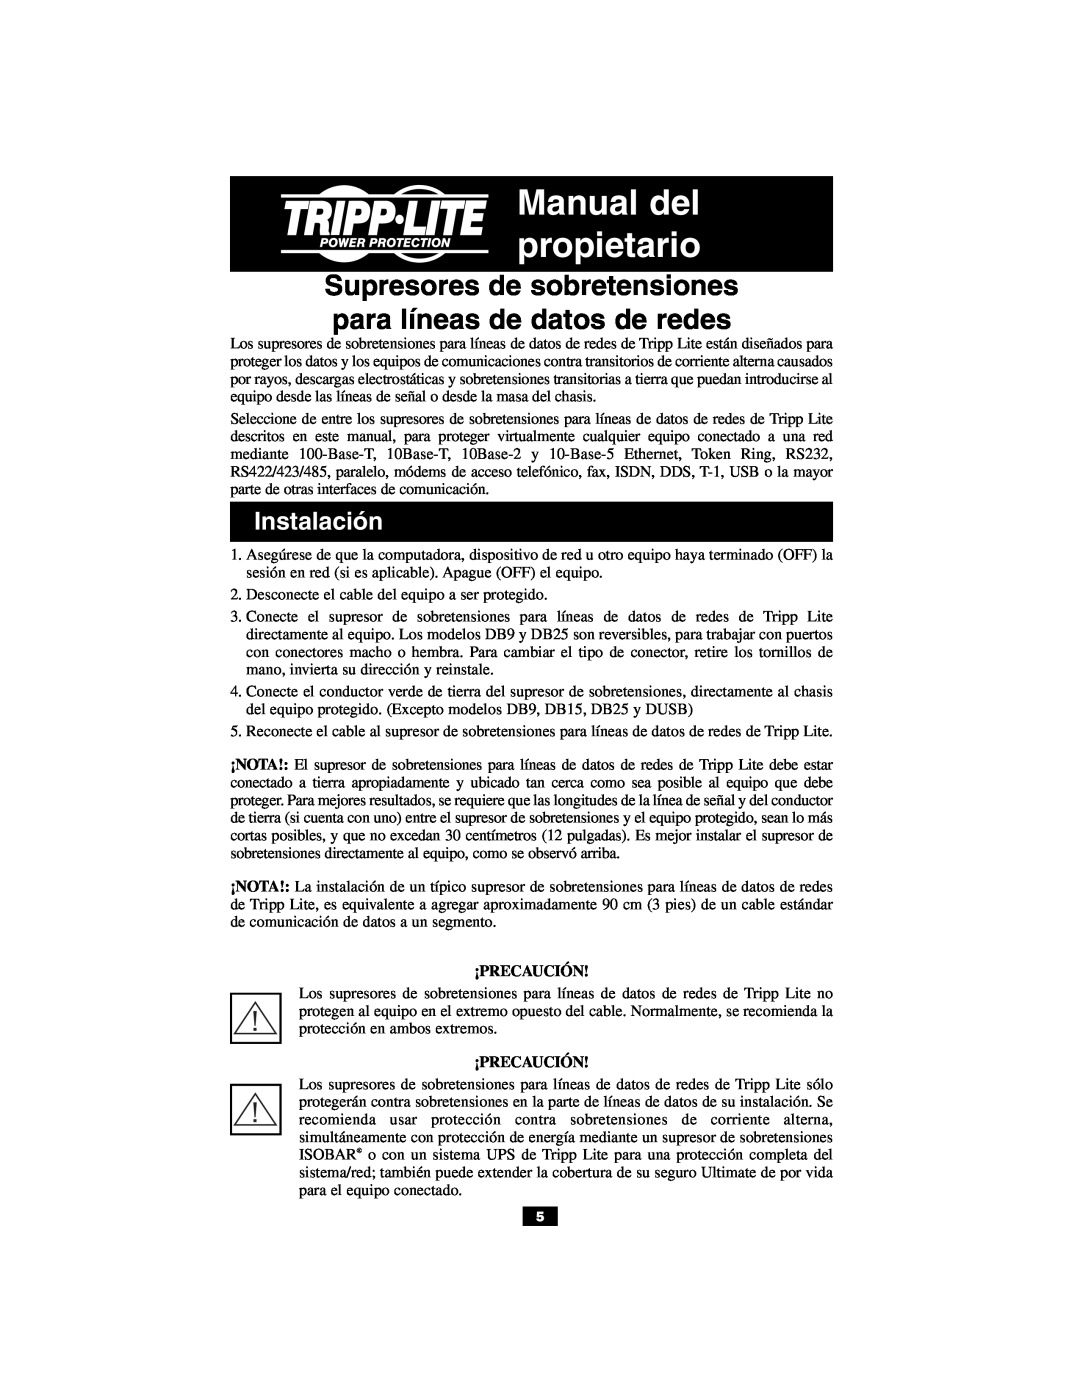 Tripp Lite DB15, DUSB, DHUB-18V DHUB Supresores de sobretensiones para líneas de datos de redes, Instalación, ¡Precaución 